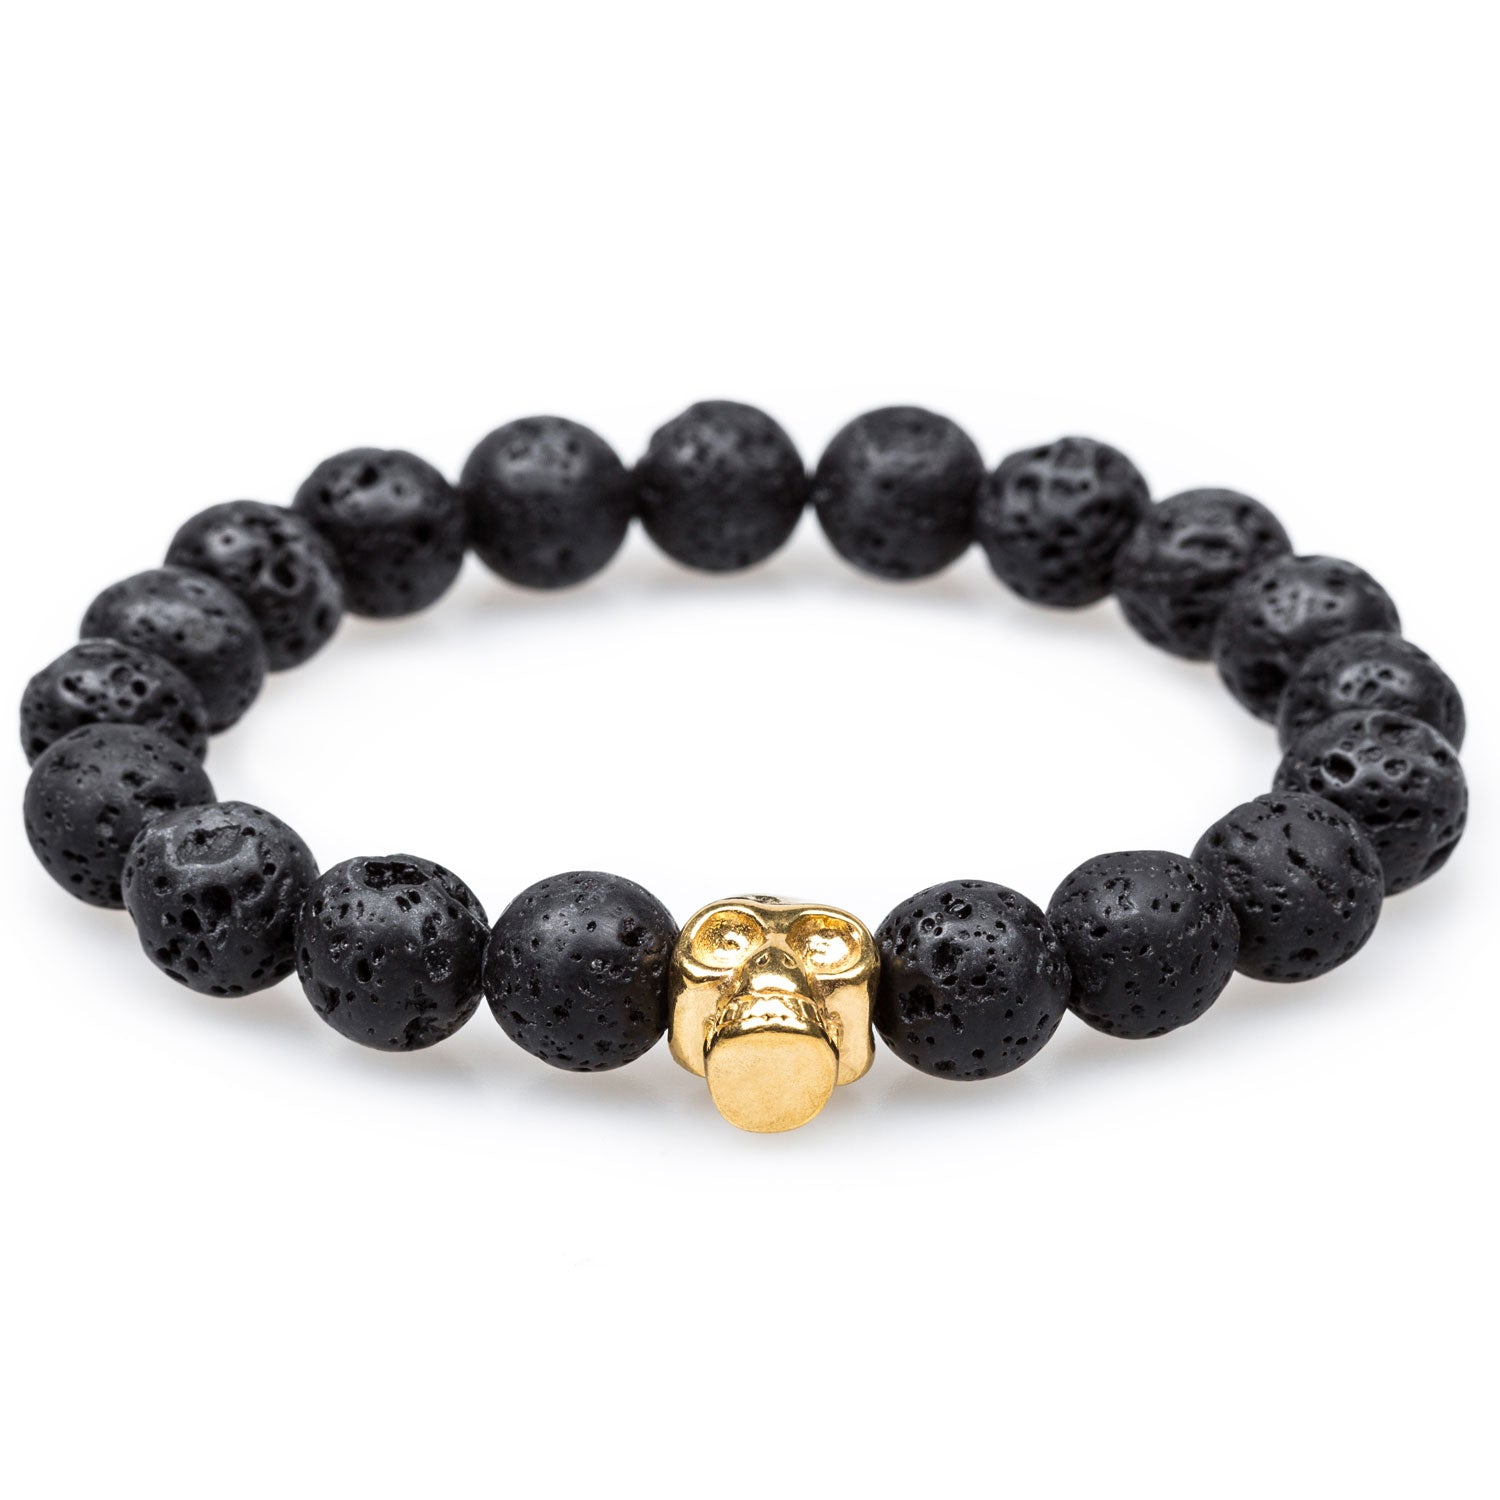 Howlite Turquoise Skull Beads Buddhist Prayer Bracelet Mala